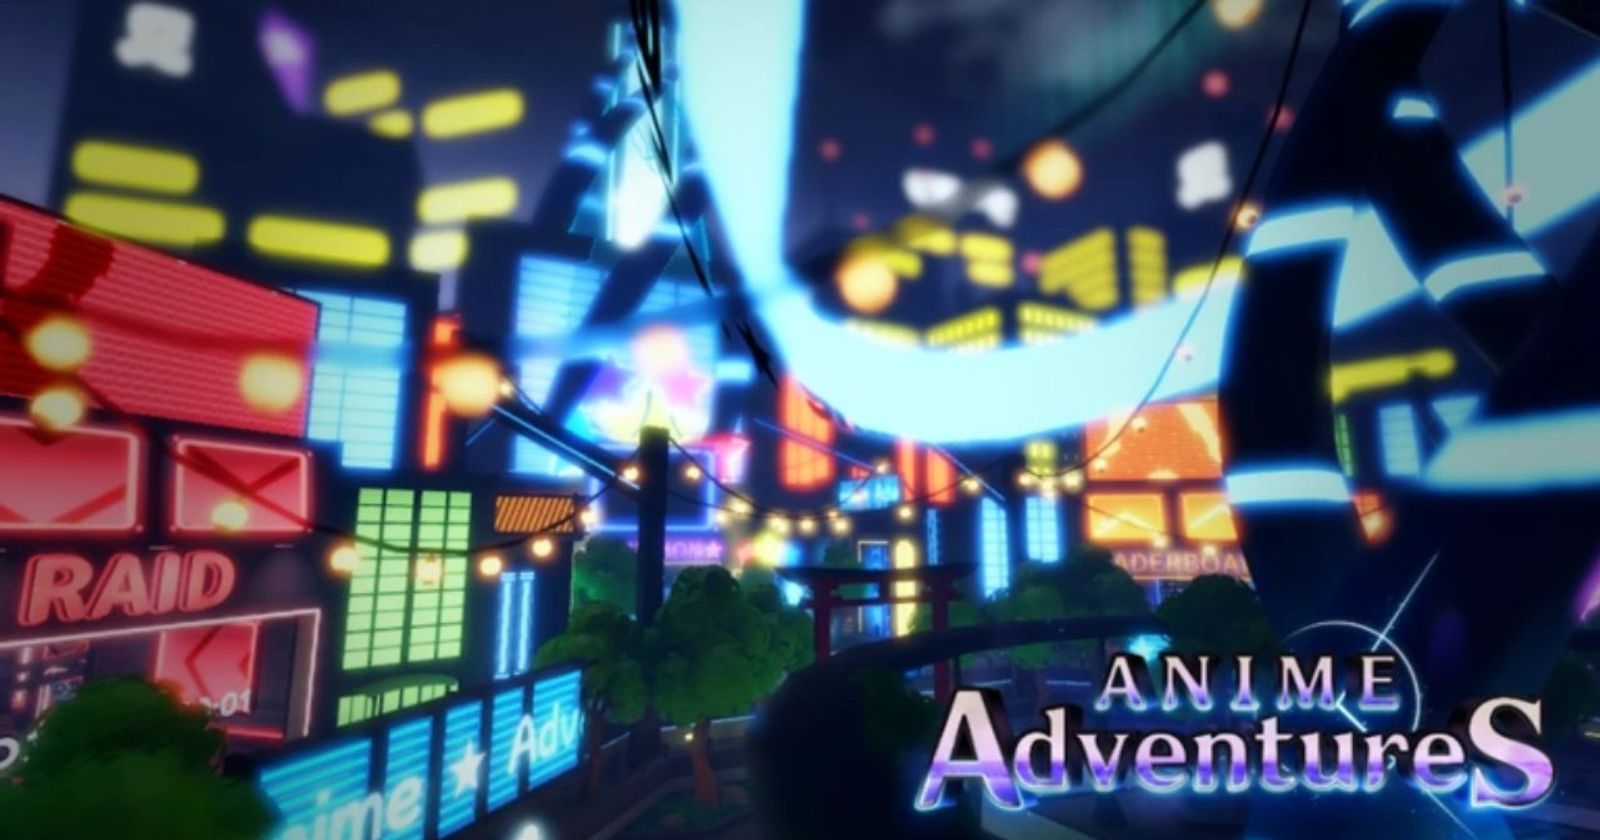 Anime Adventures relic tier list